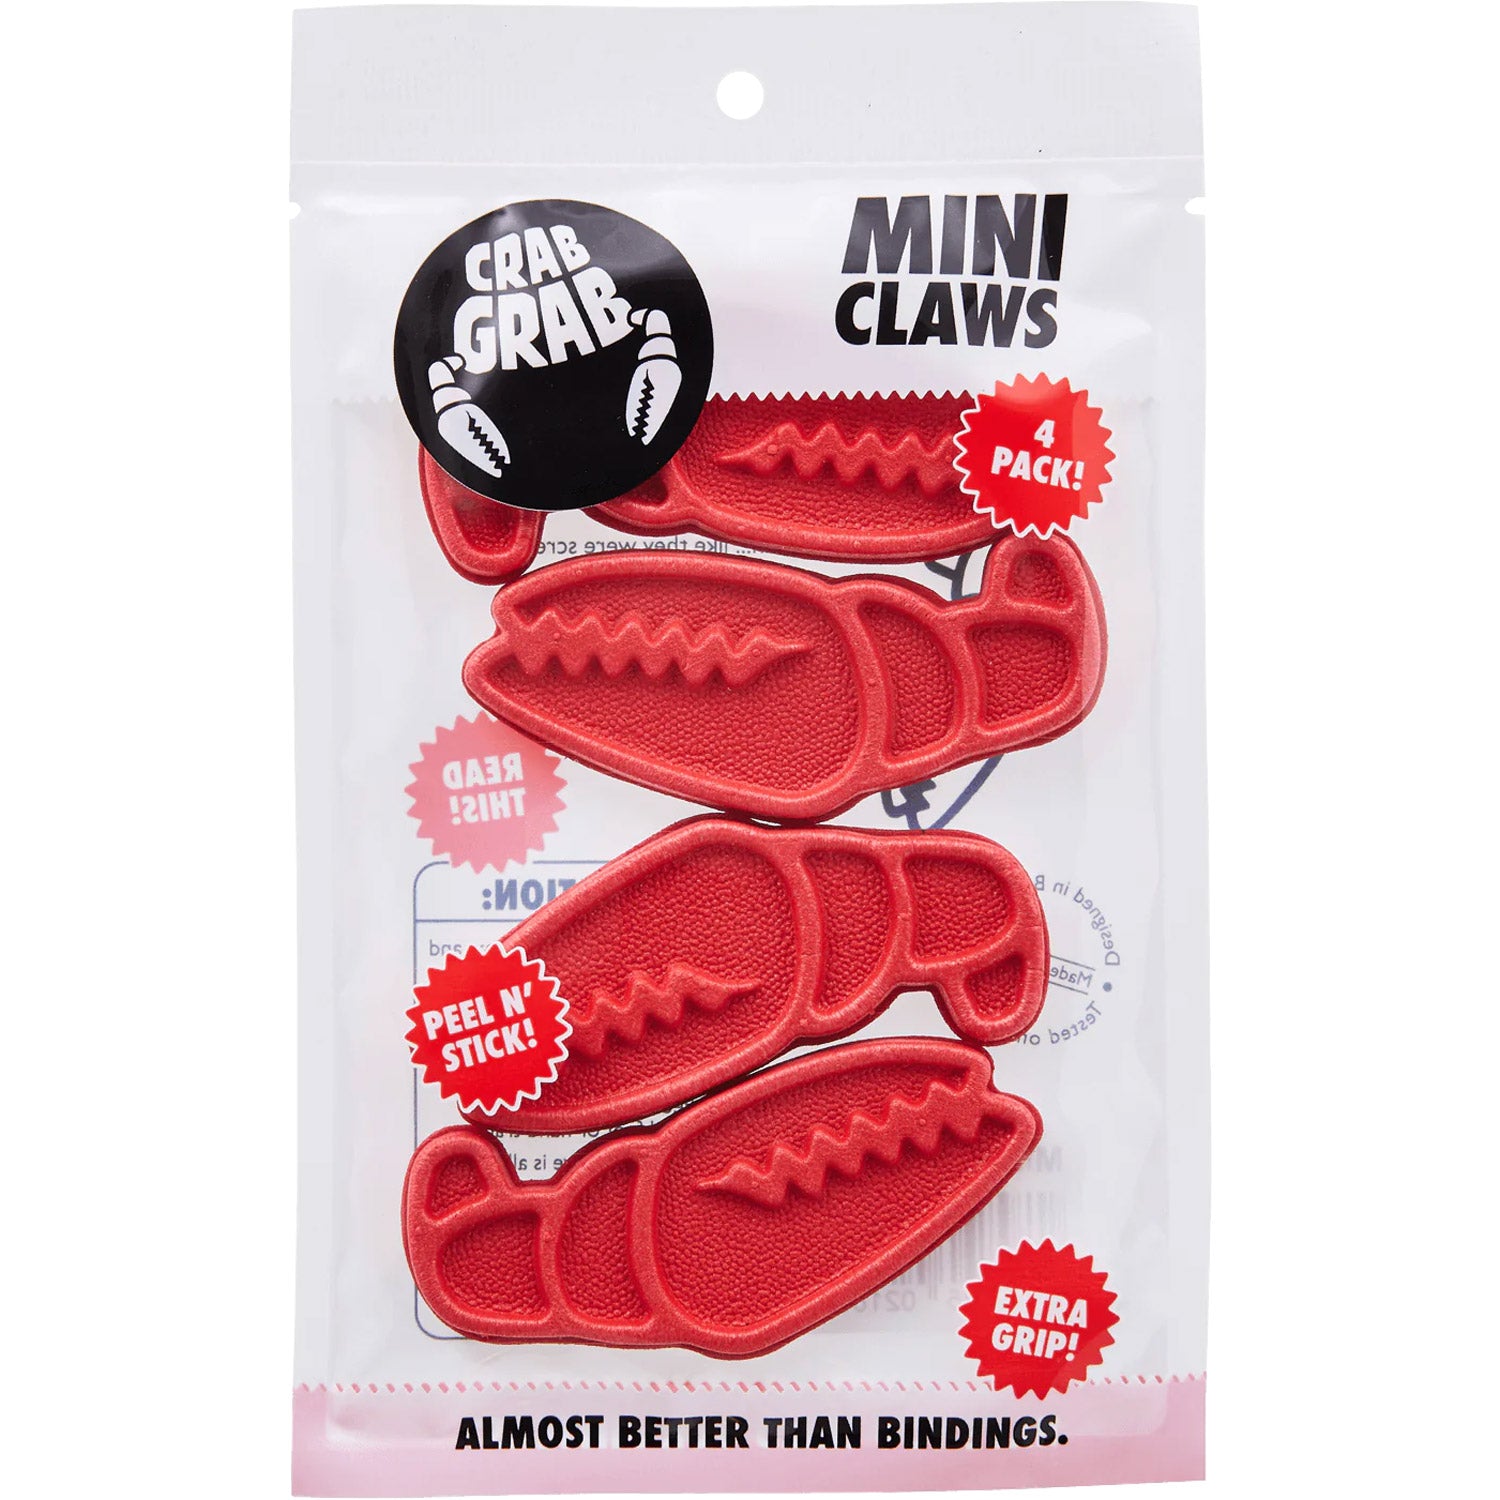 Crab Grab Mini Claws 4pk Stomp Pad